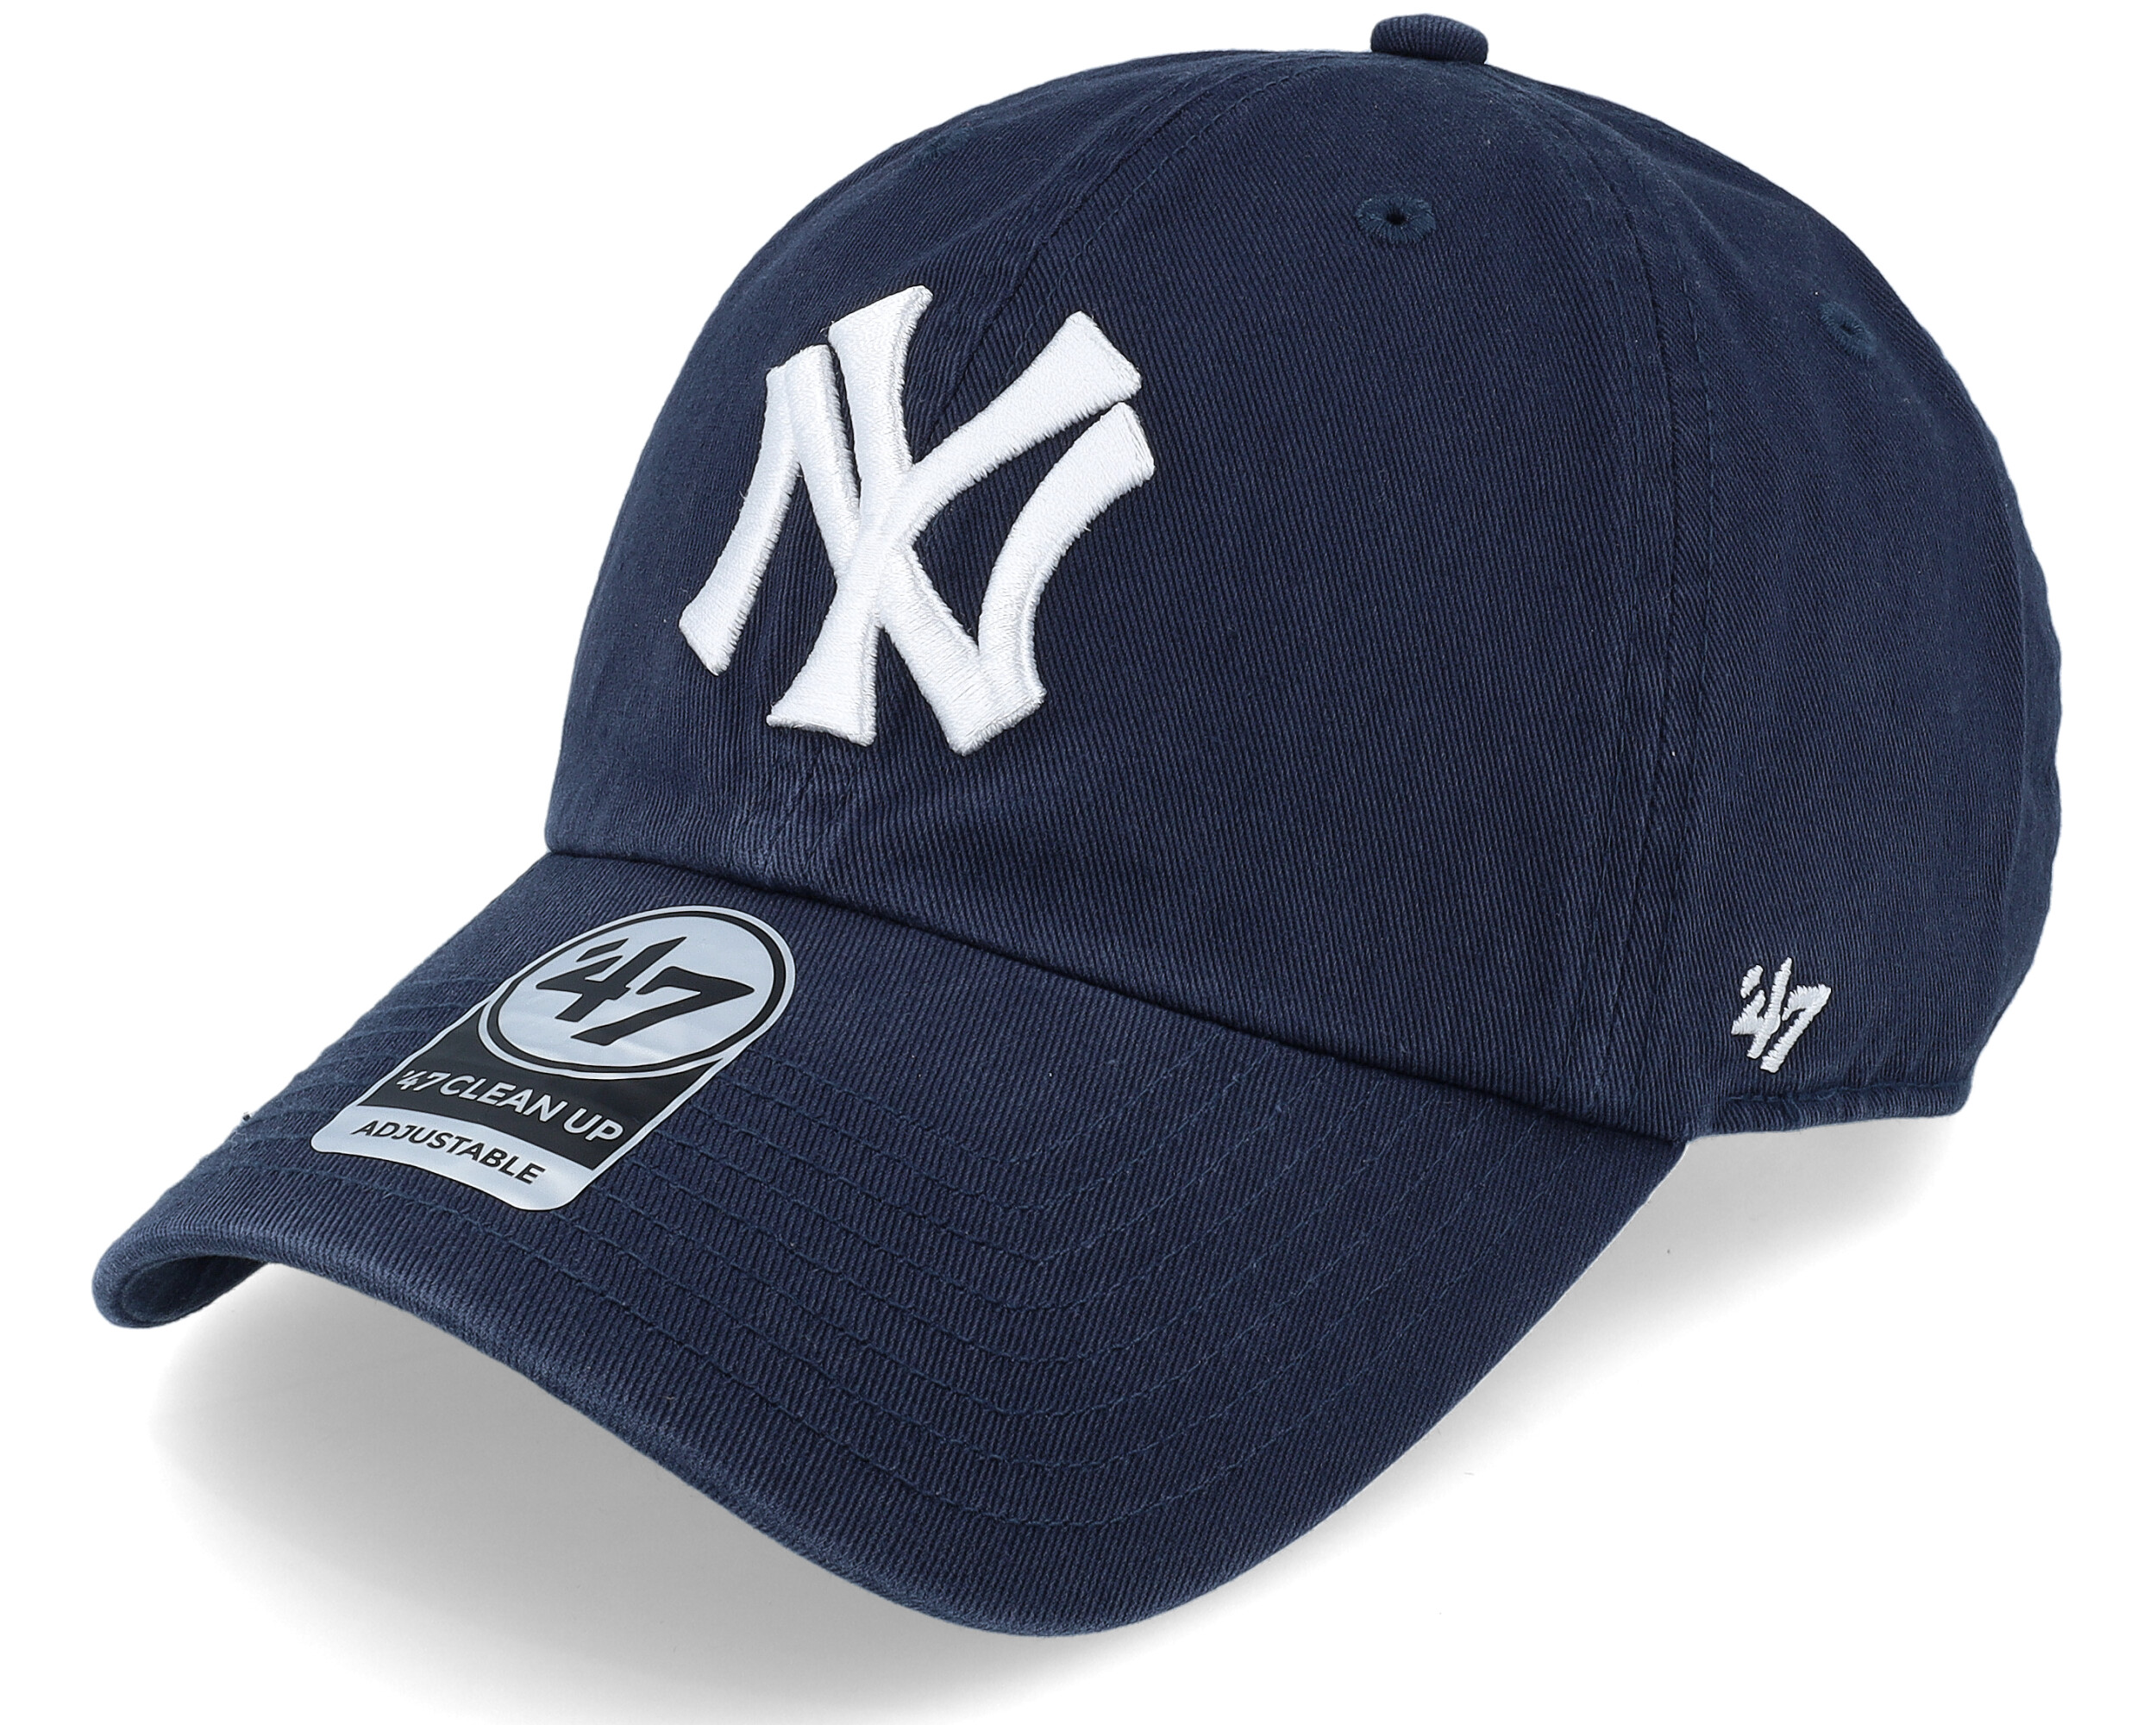 47 MLB New York Yankees Clean Up Cap Black